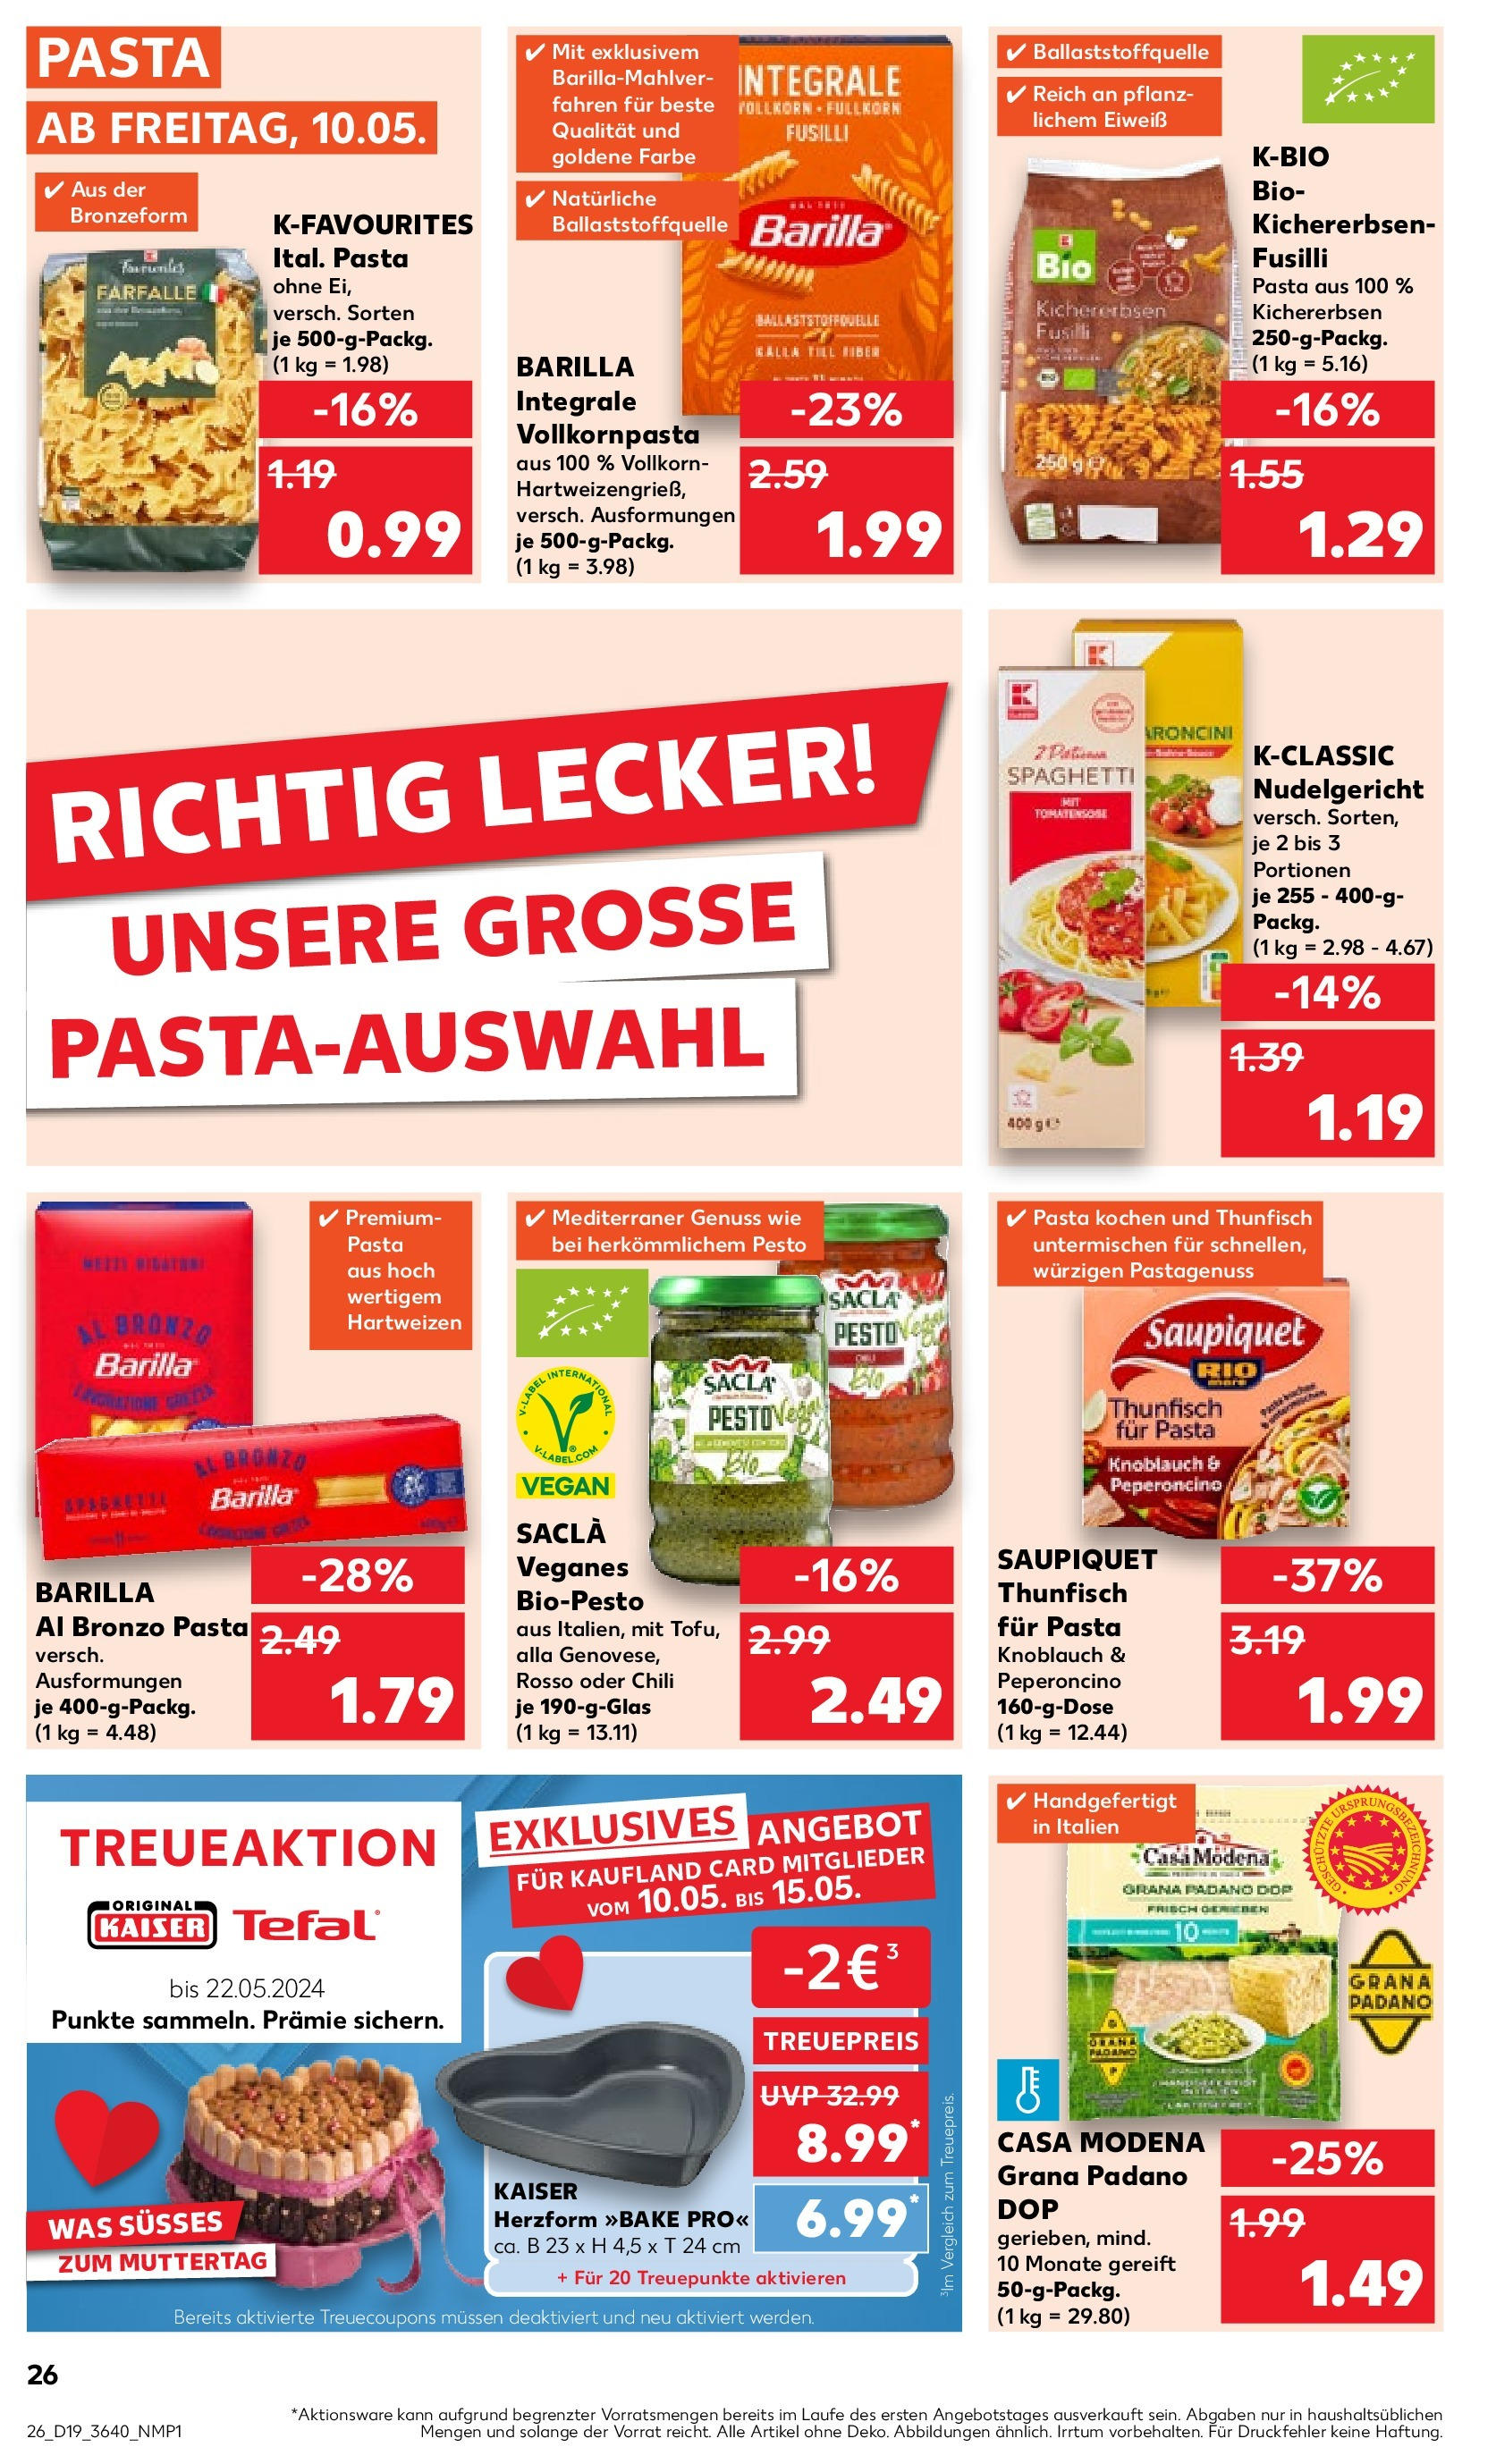 Kaufland - Sachsen (ab 10.05.2024) » Angebote Online zum Blättern | Seite: 26 | Produkte: Barilla, Knoblauch, Chili, Pasta